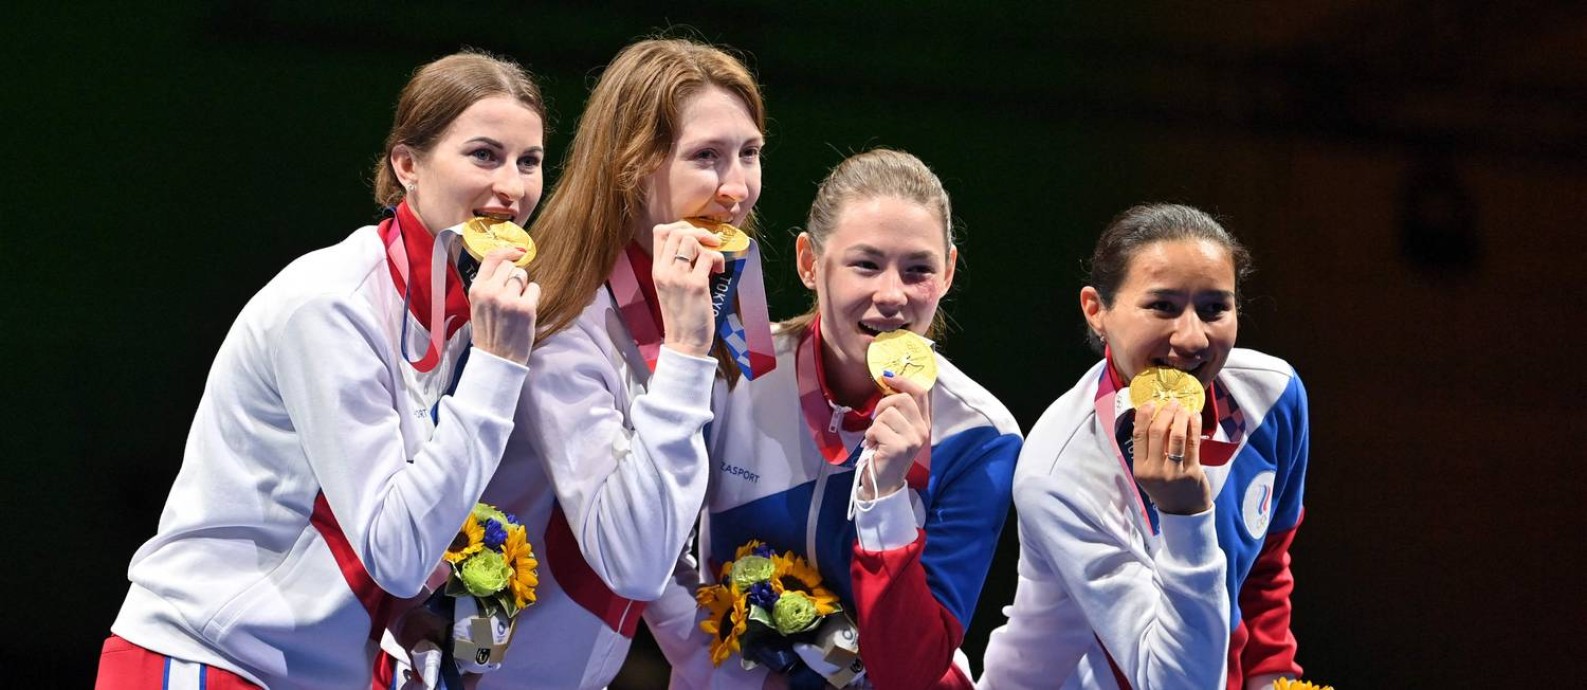 Por que a Rússia foi banida das olimpíadas? - Quora